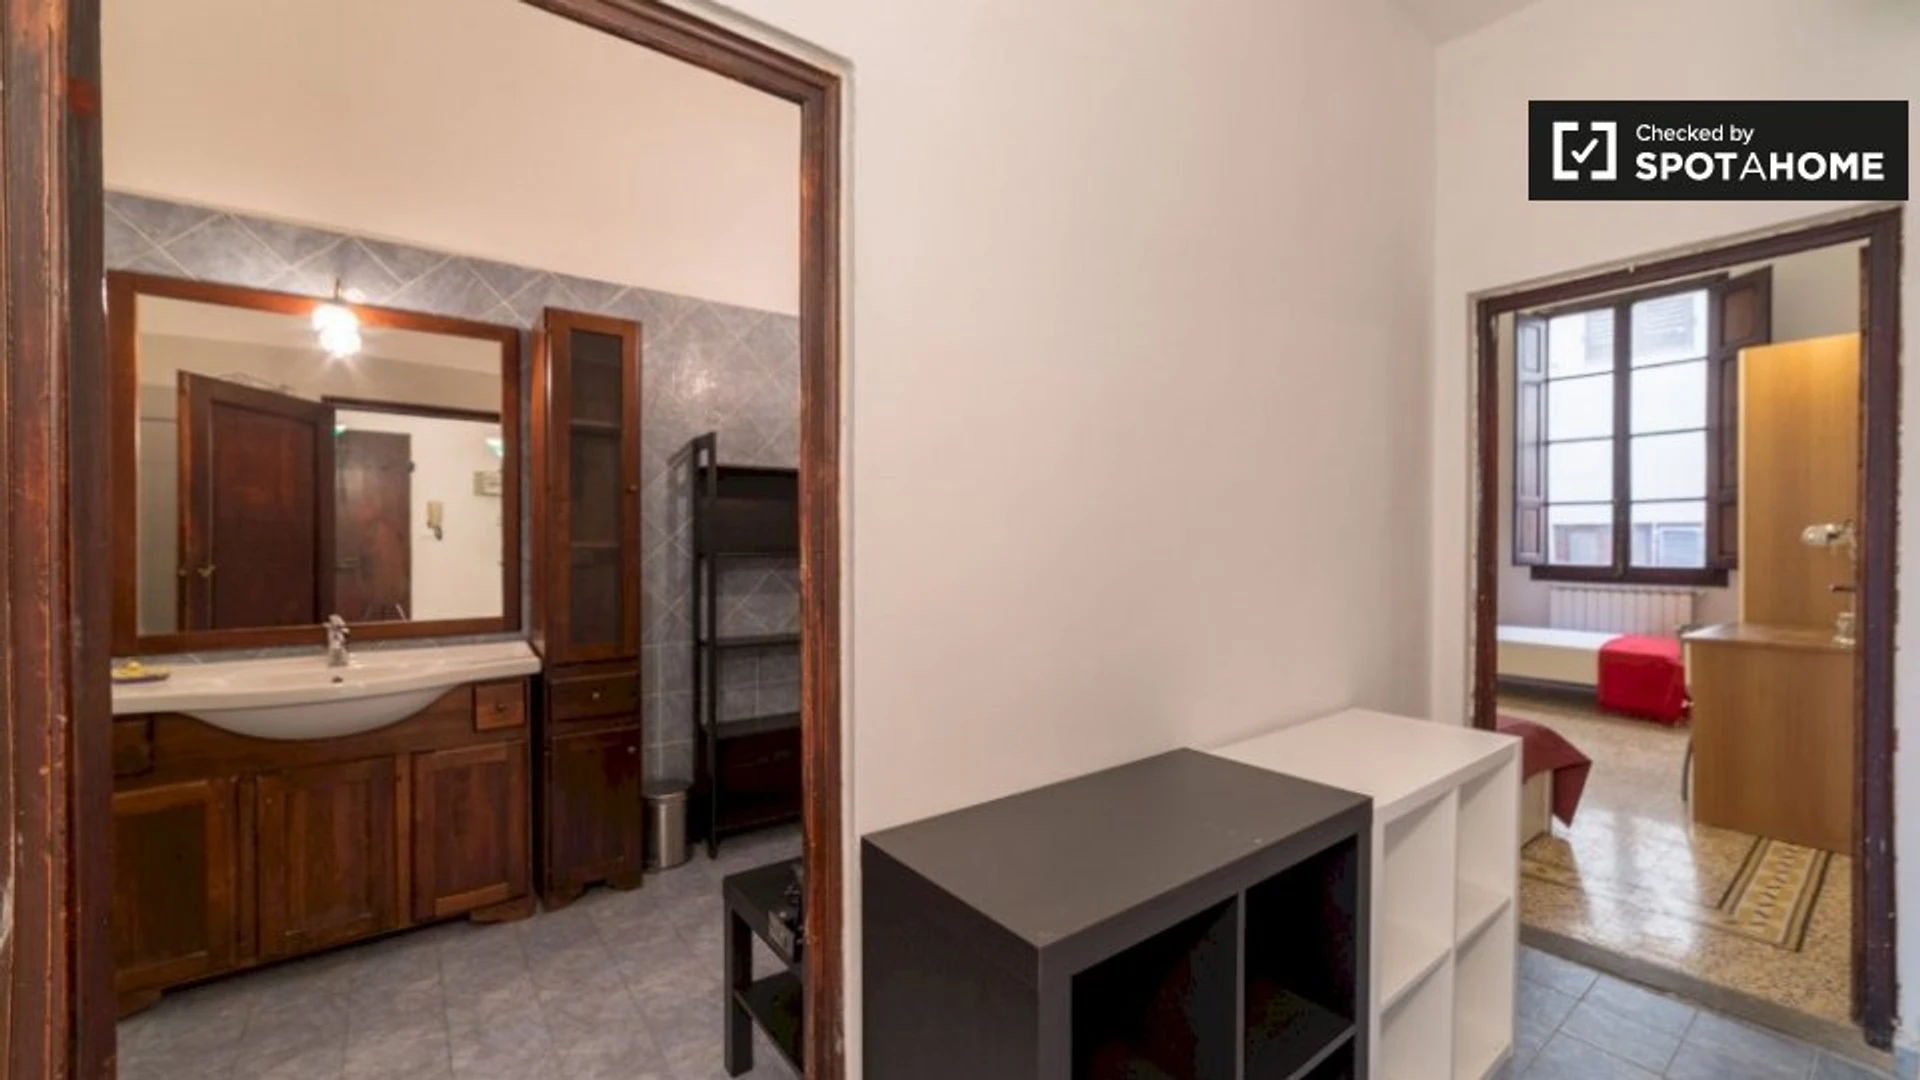 Monatliche Vermietung von Zimmern in Florenz